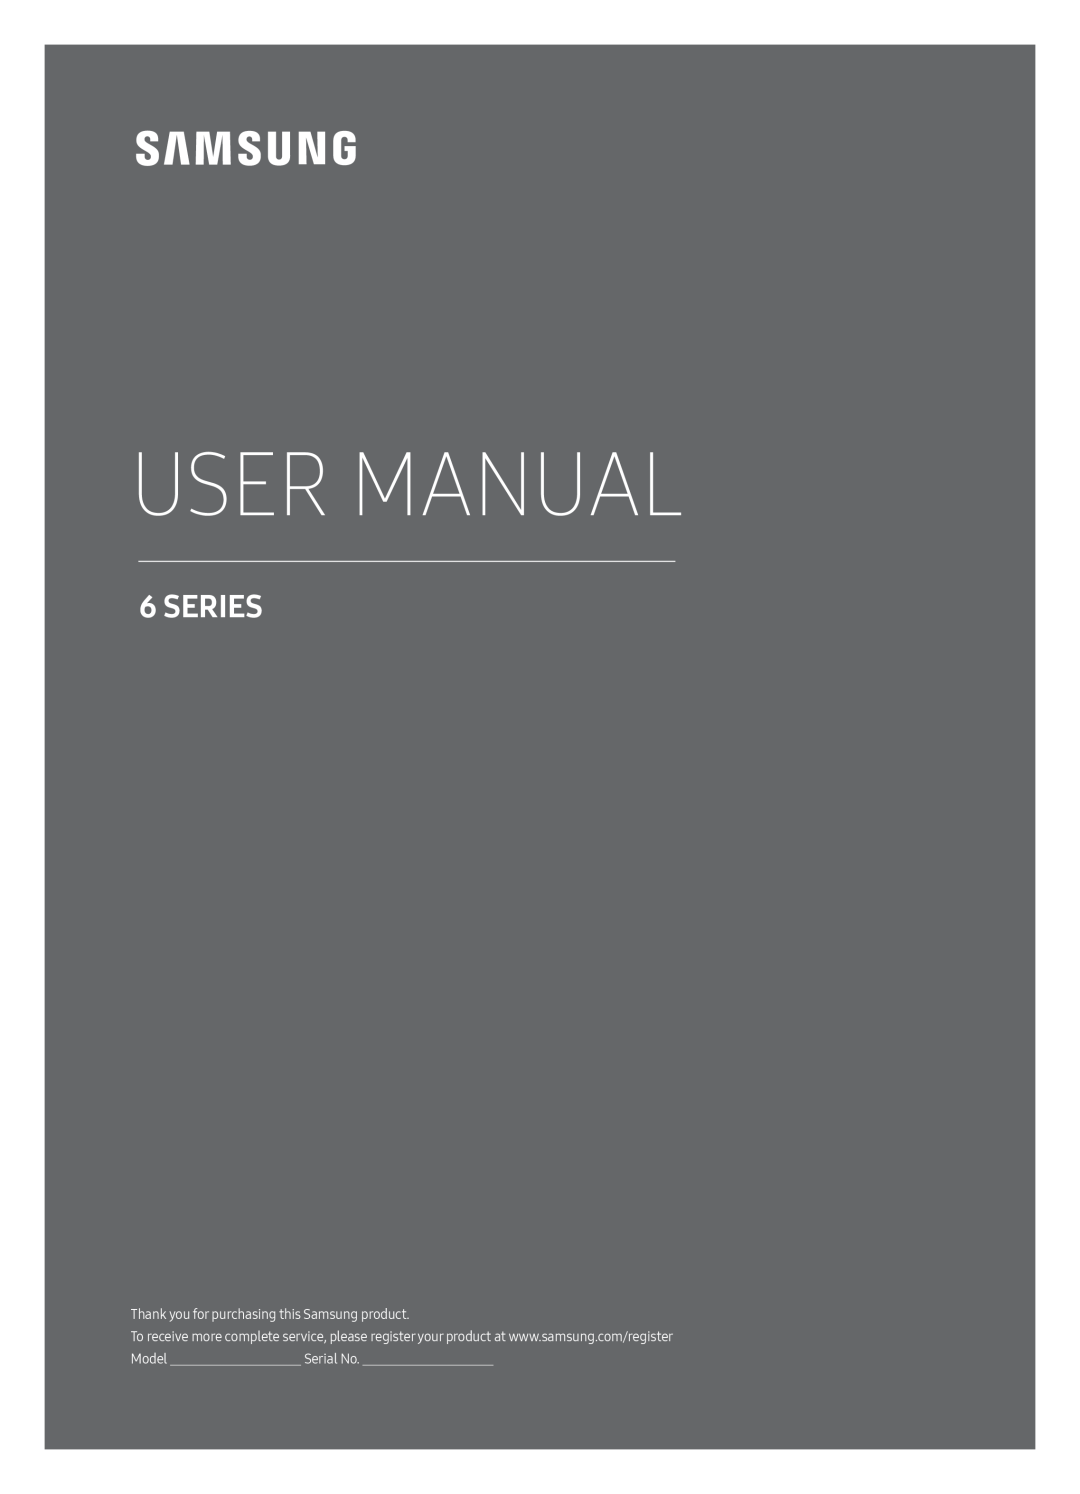 Samsung UE65MU6449UXZG, UE40MU6479UXZG, UE40MU6449UXZG, UE49MU6449UXZG, UE40MU6459UXZG manual User Manual, Series, Serial No 